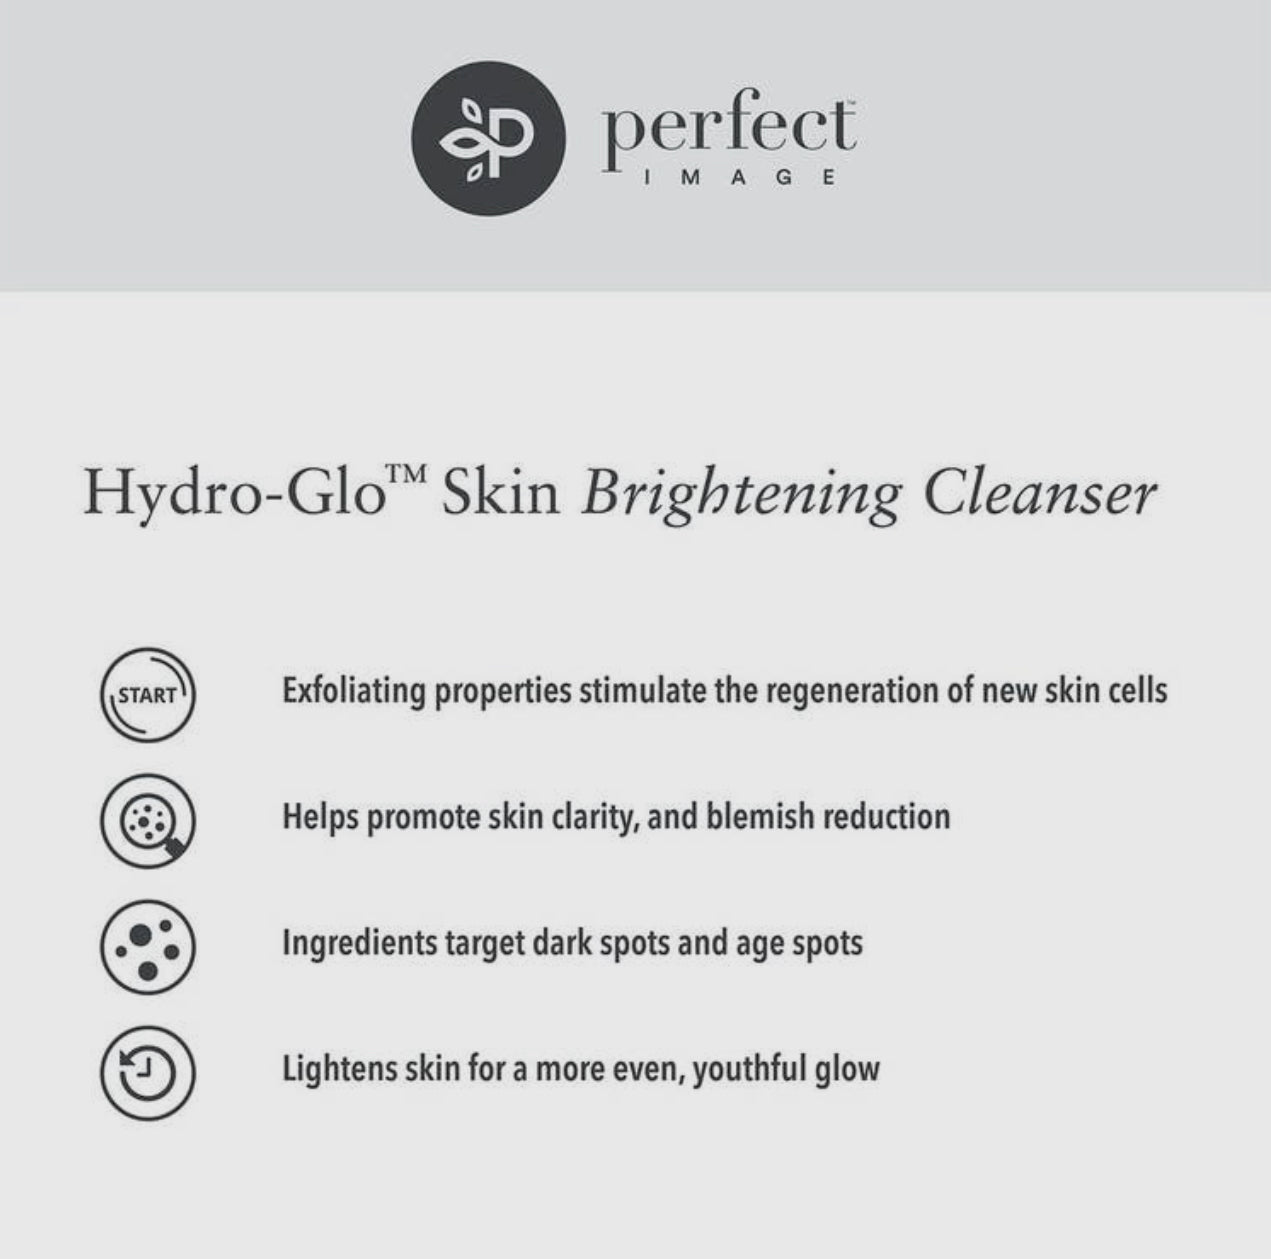 Hydro-Glo Skin Brightening Cleanser